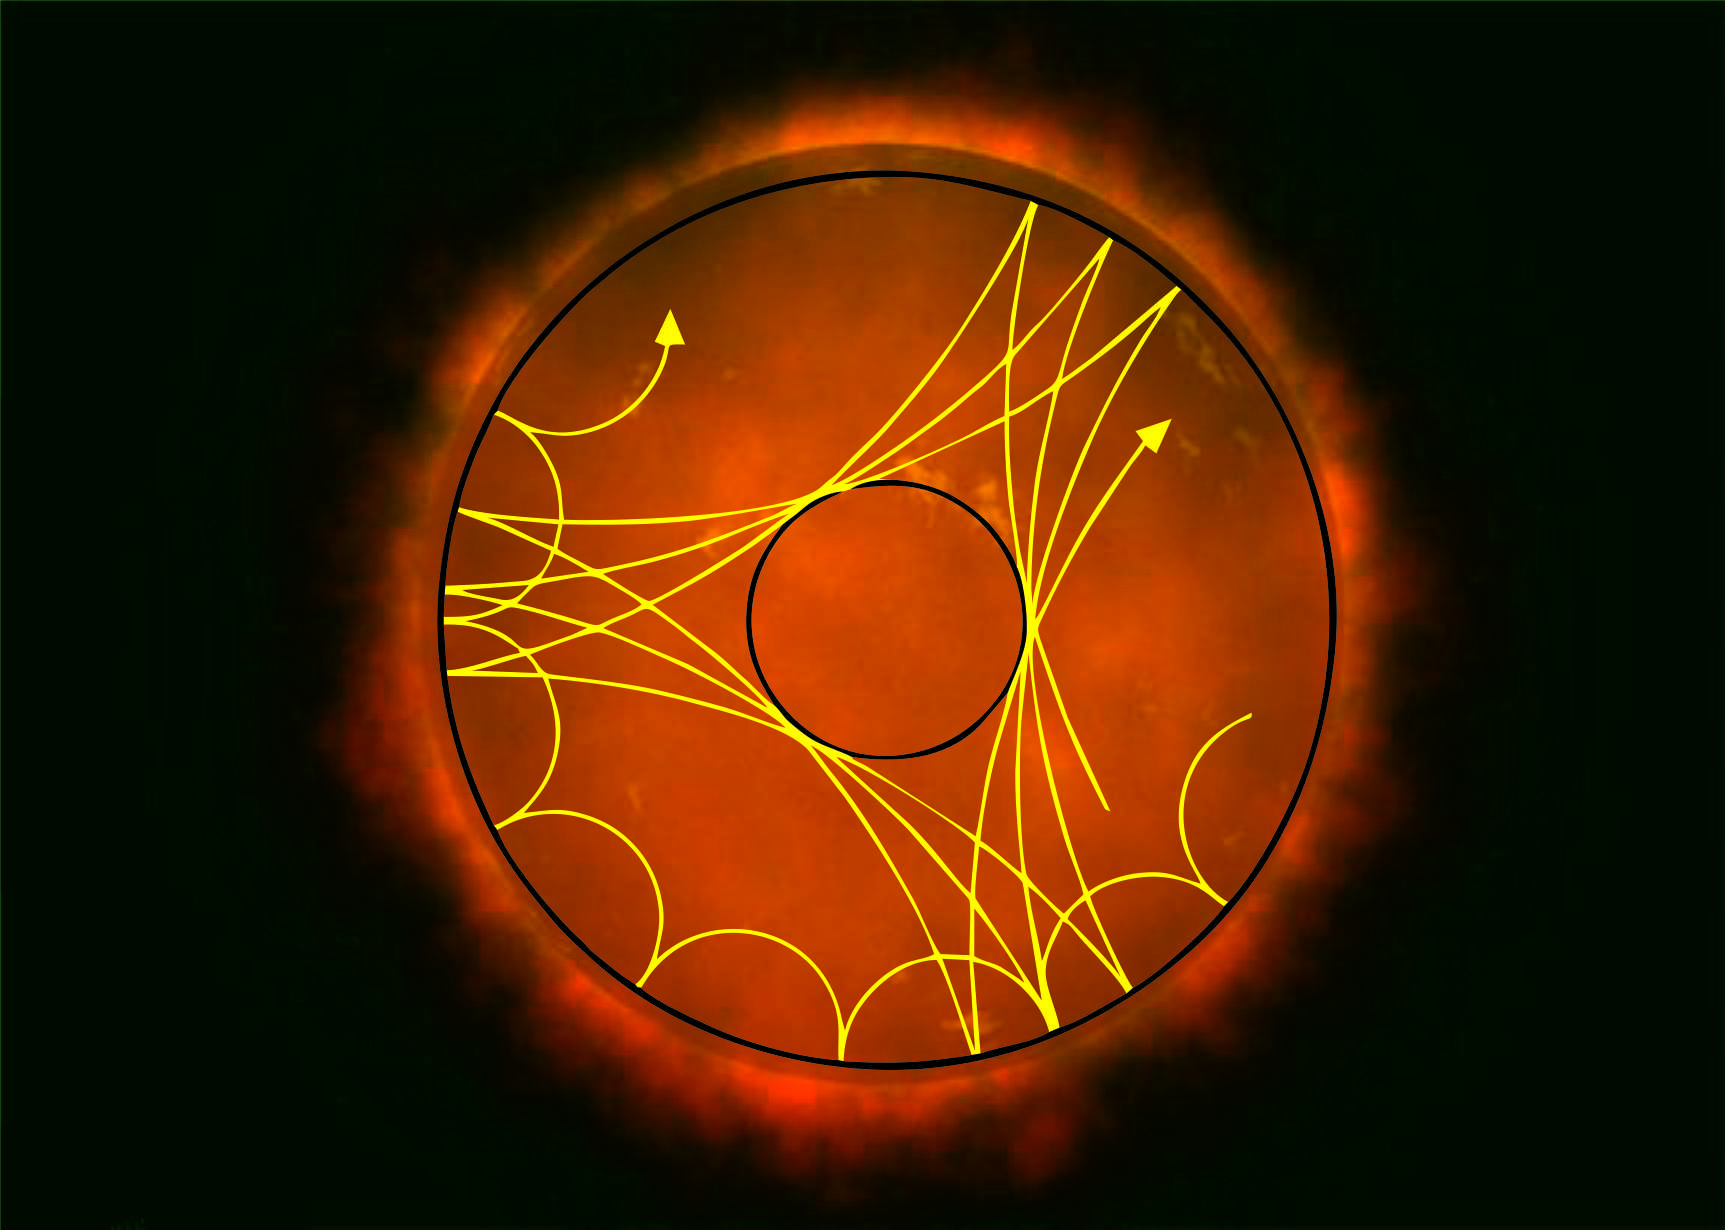 Vista esquemática de dos modos de pulsación diferentes propagándose en el interior de una estrella. Los modos p- son menos profundos y se reflejan en la superficie estelar con mayor frecuencia que los modos g- que viajan más profundamente hasta el interior estelar.